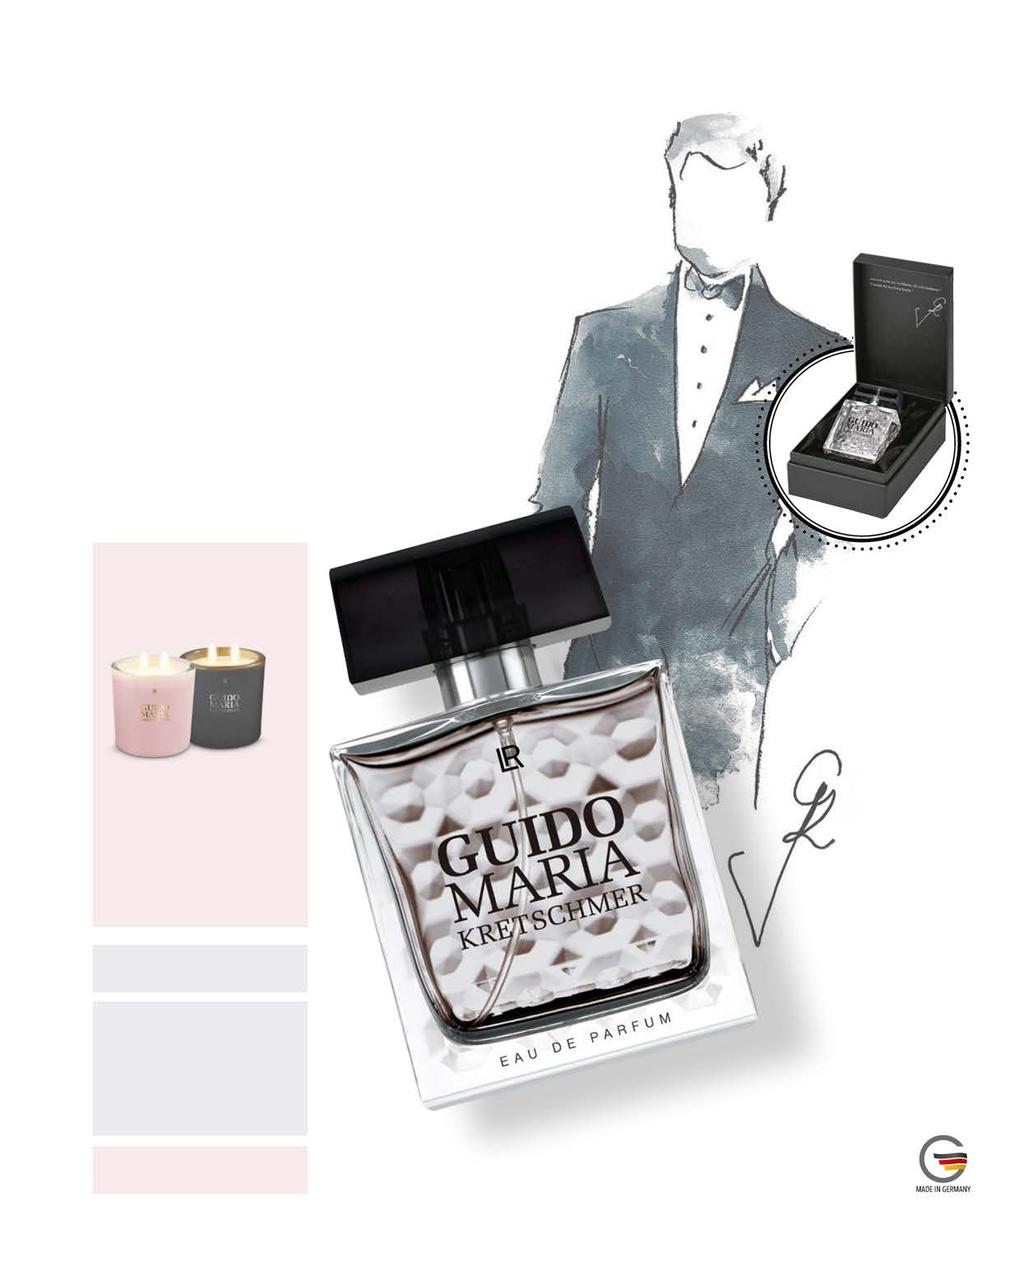 Haute parfum for Men by Guido Maria Kretschmer Podobnie jak zapach dla kobiet, również męska wersja nosi znamiona rozpoznawalnego stylu projektanta mody.